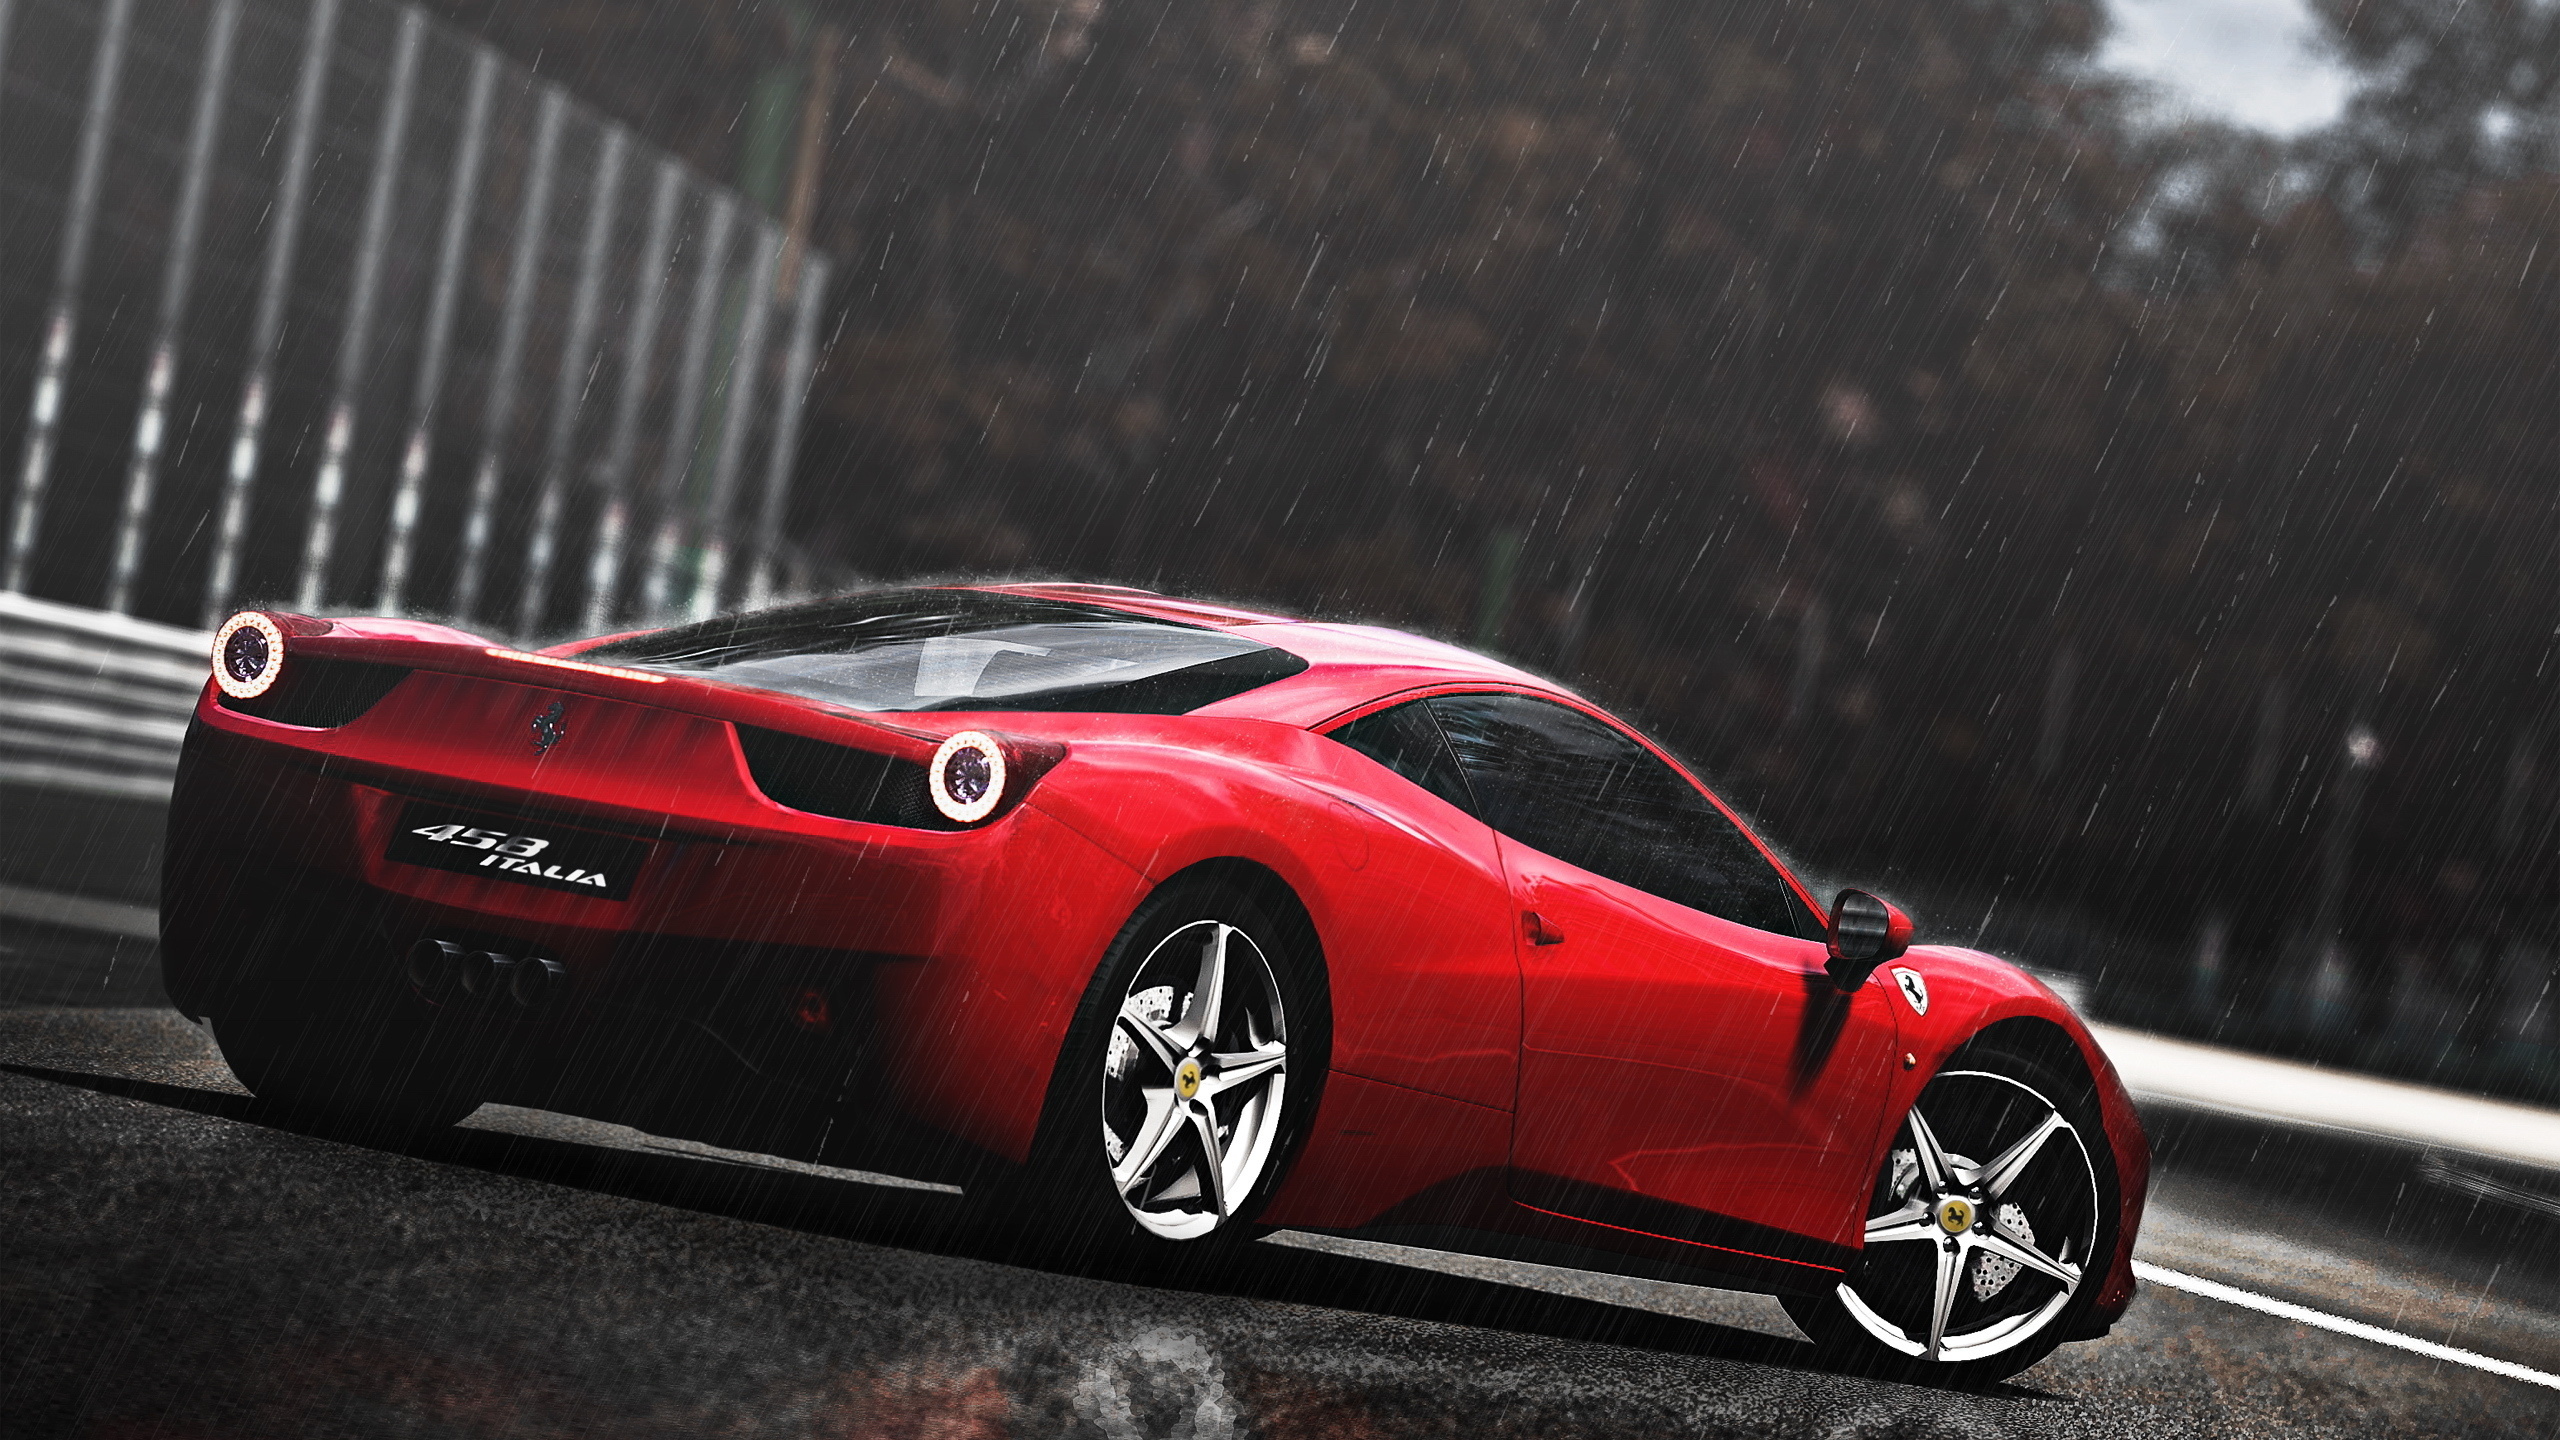 Обои Италия Ferrari спортивный автомобиль на рабочий стол